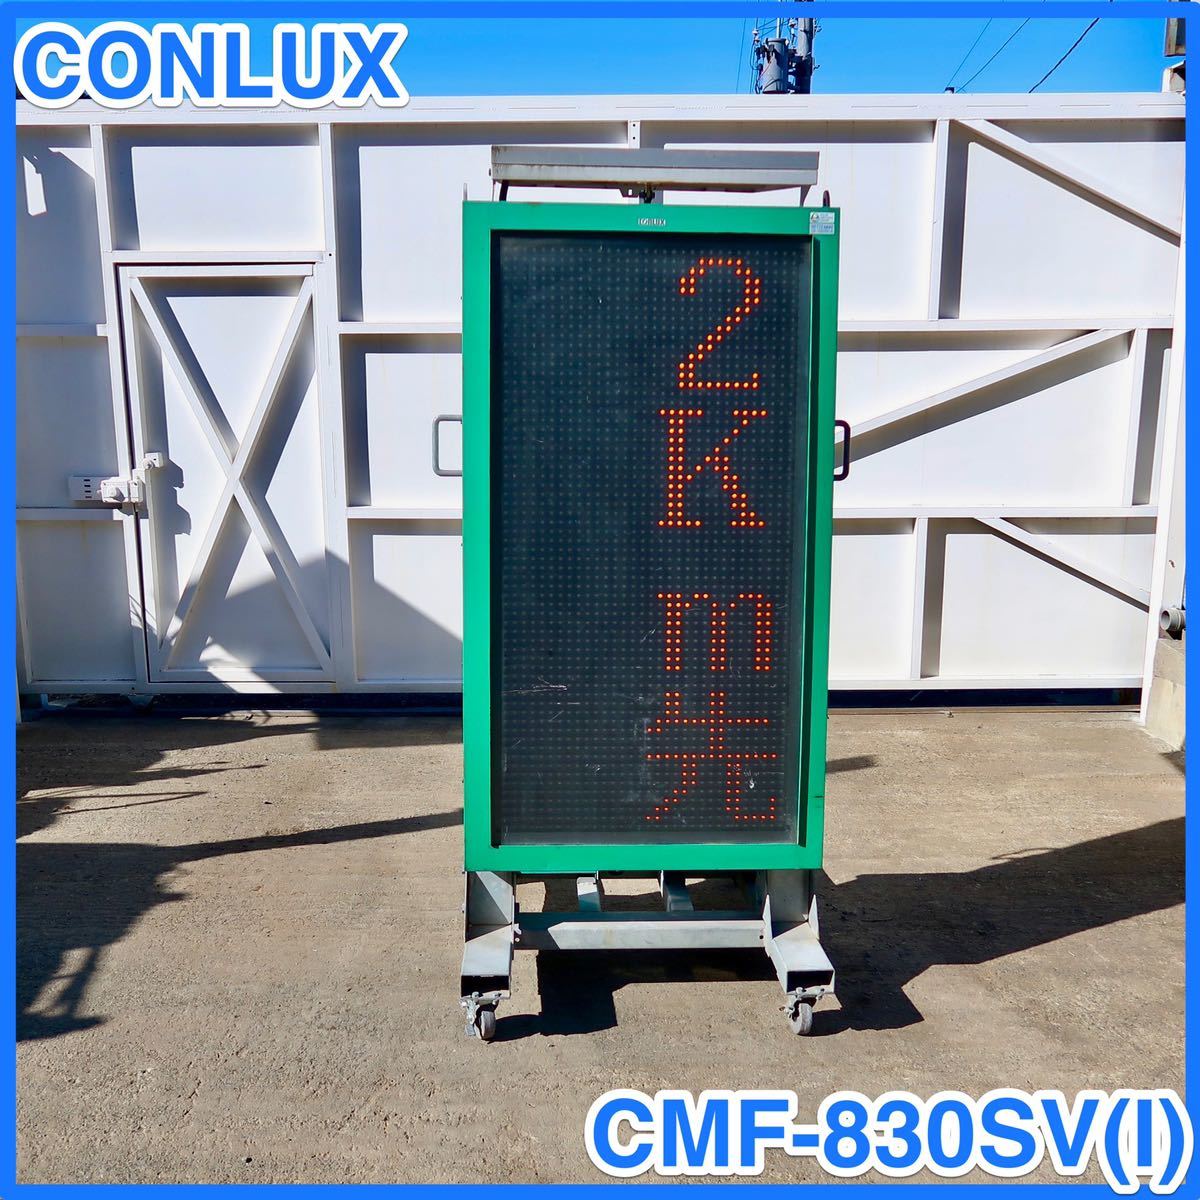 ☆ 中古 CONLUX ソーラー式LED表示機 CMF-830SV (I) コンラックス松本 メッセージボード 電光掲示板 ☆ 1個